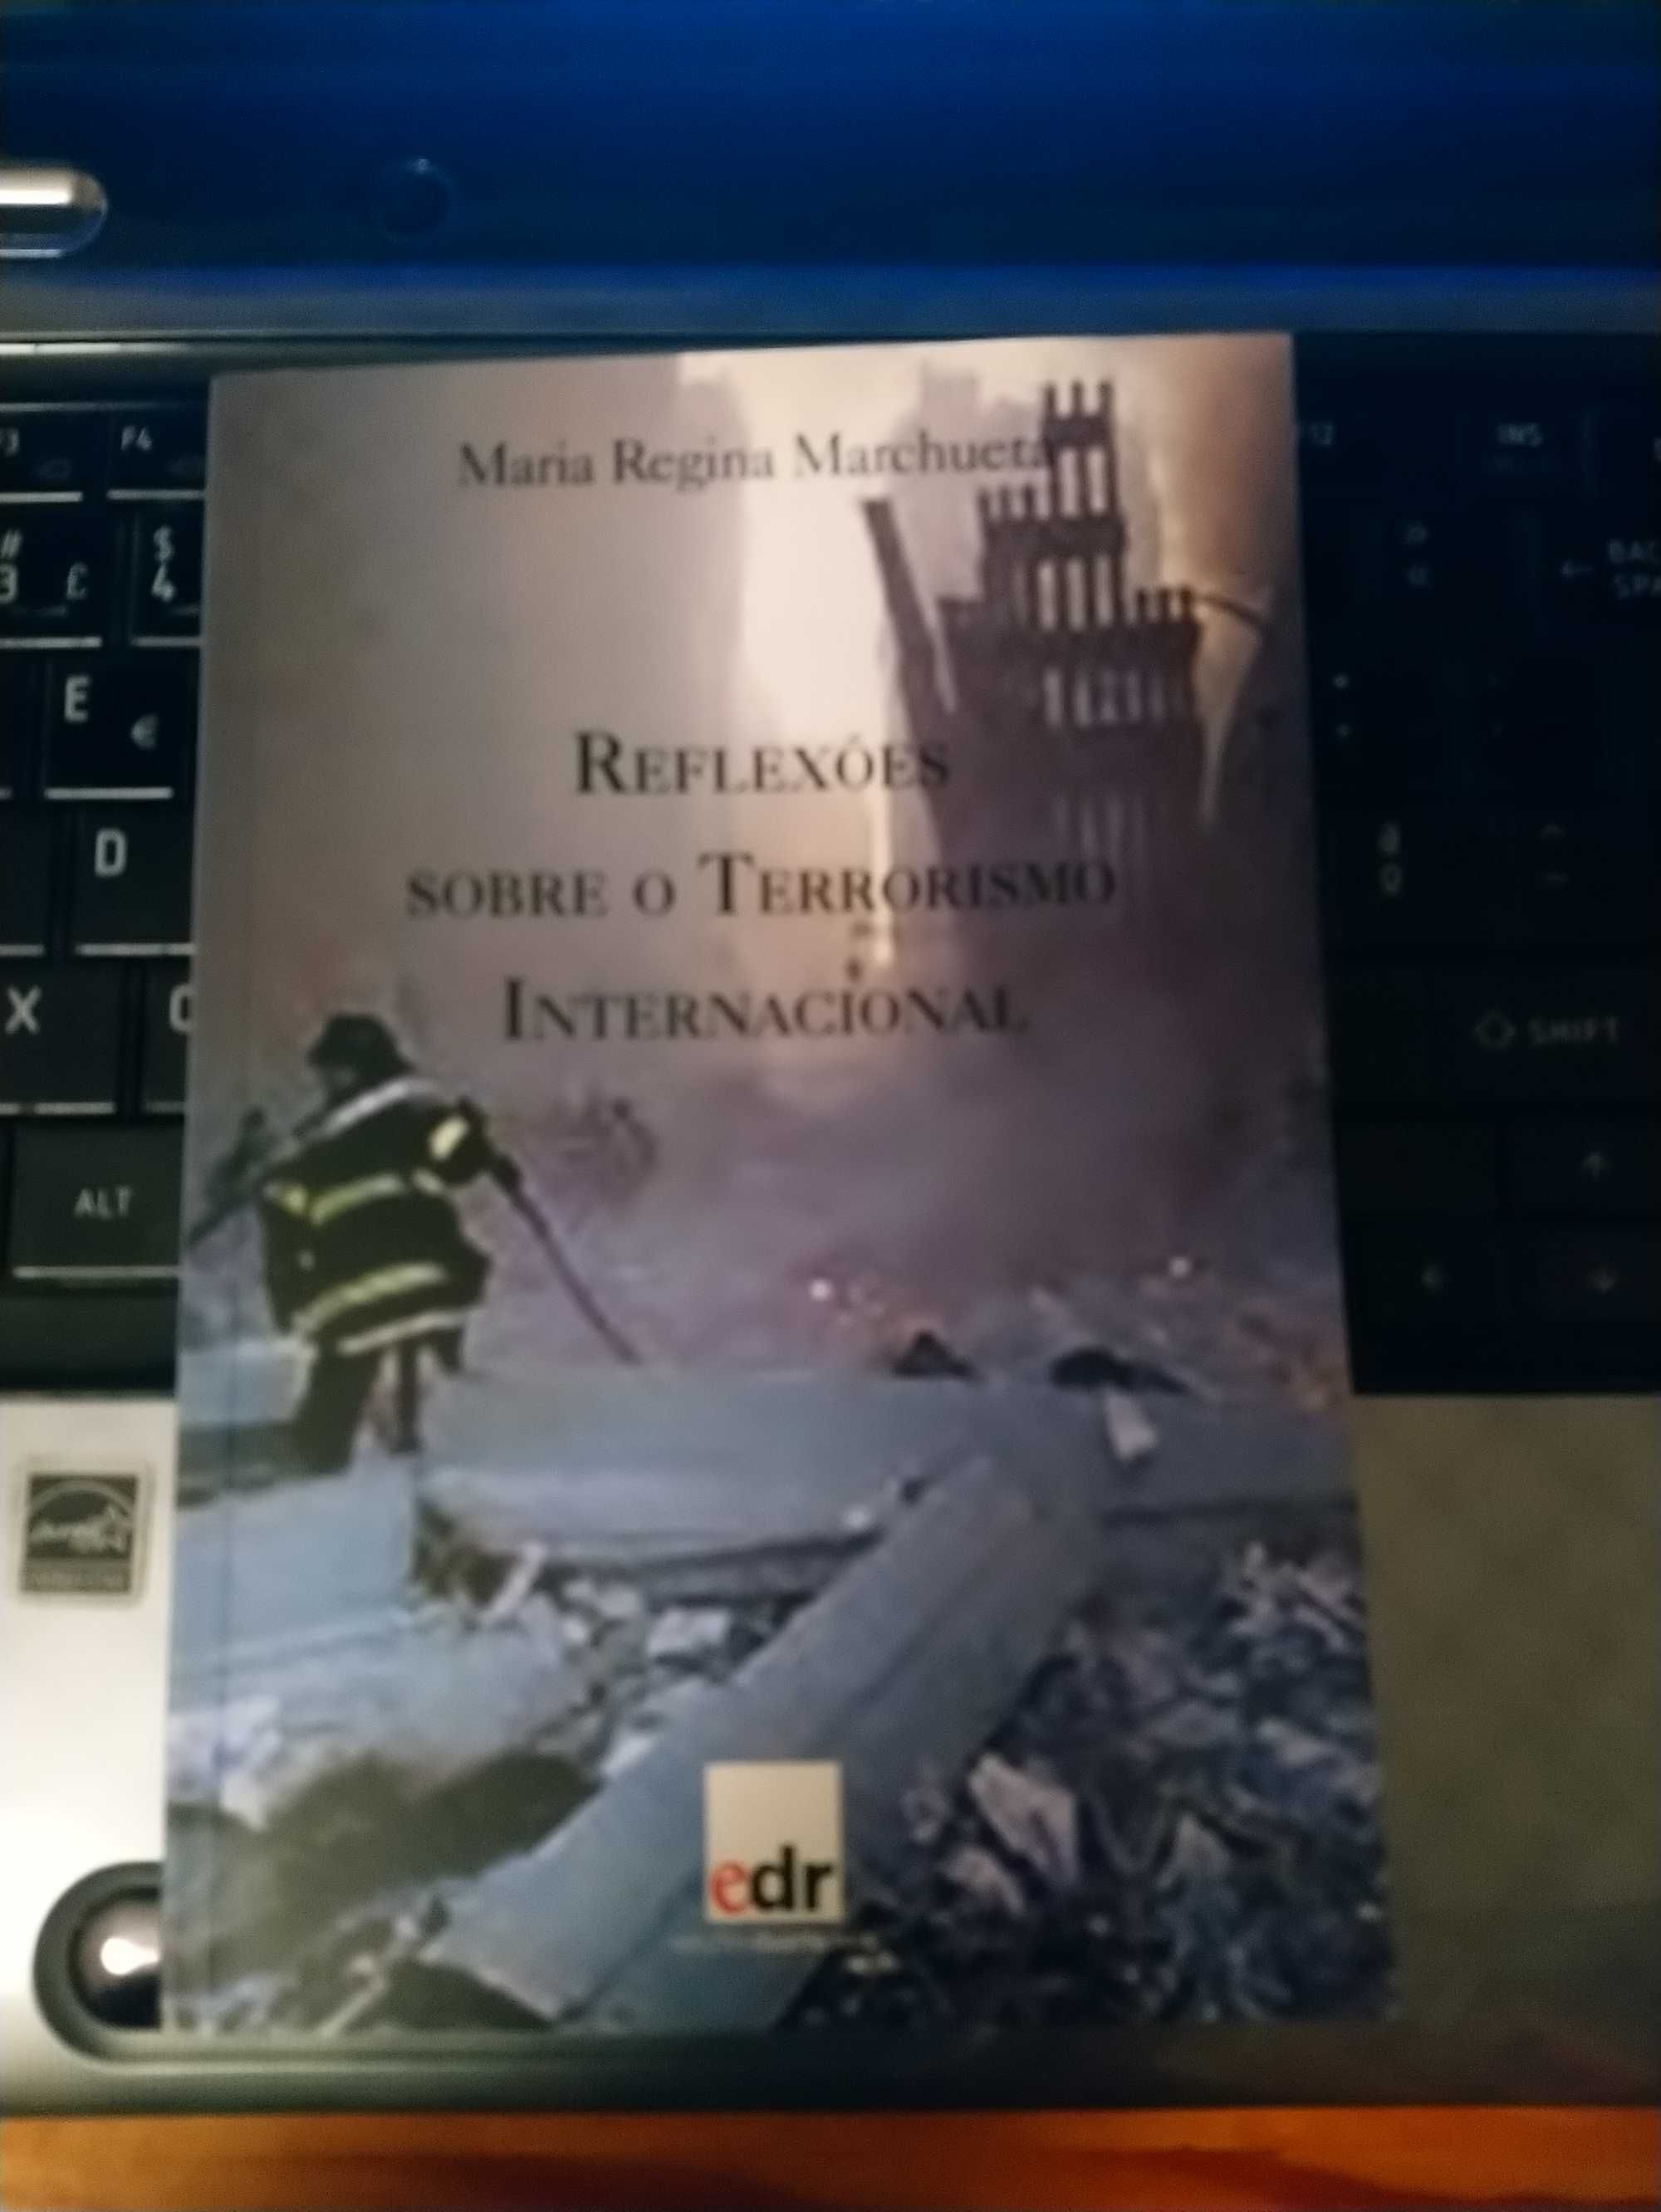 Livro “Reflexões sobre o Terrorismo Internacional”